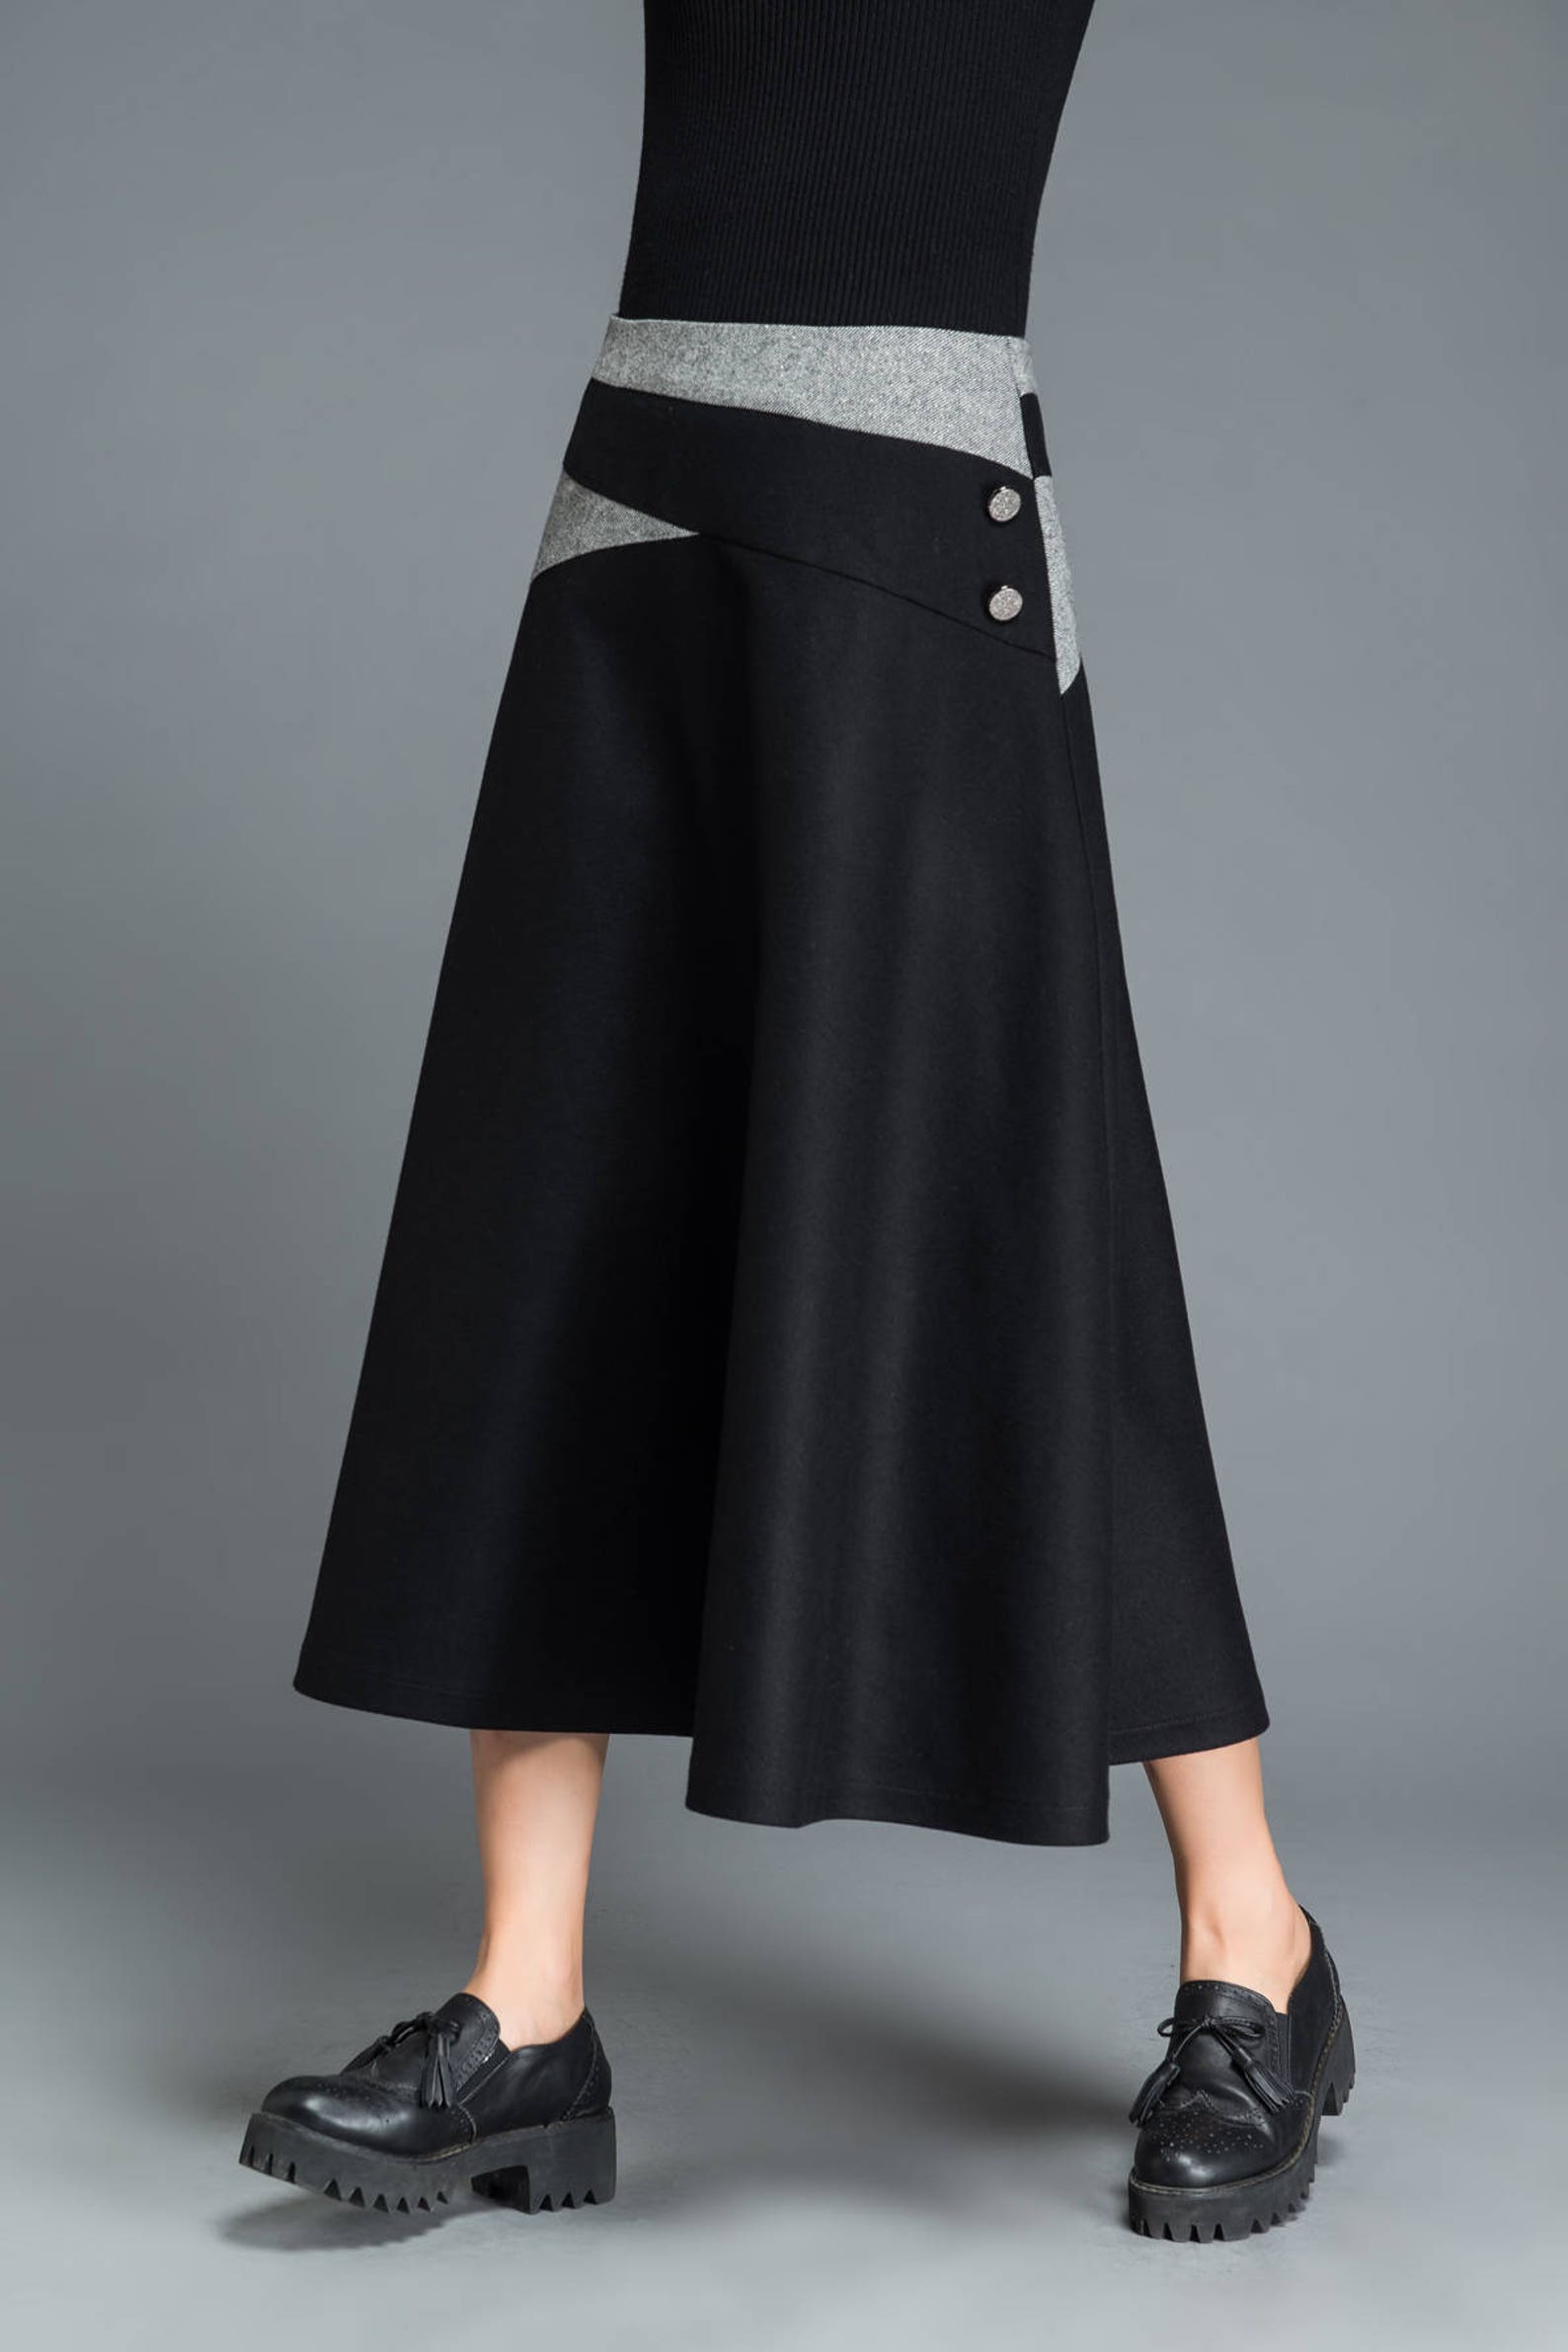 Black wool skirt winter skirt A line skirt patchwork skirt | Etsy